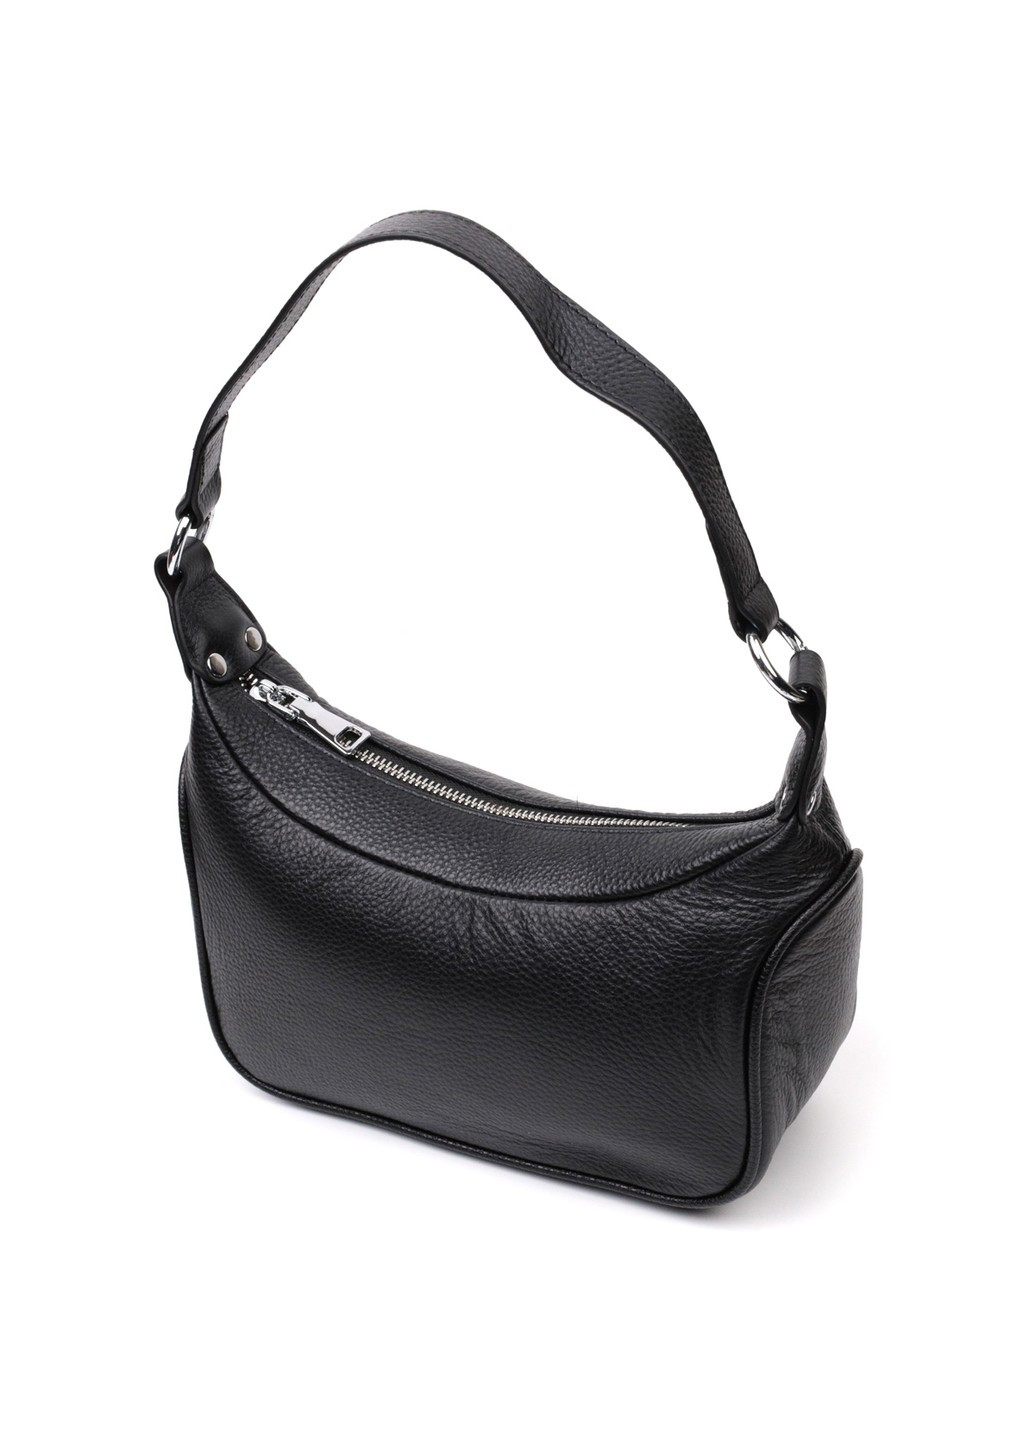 Аккуратная кожаная женская сумка полукруглого формата с одной ручкой 22411 Черная Vintage (276461717)